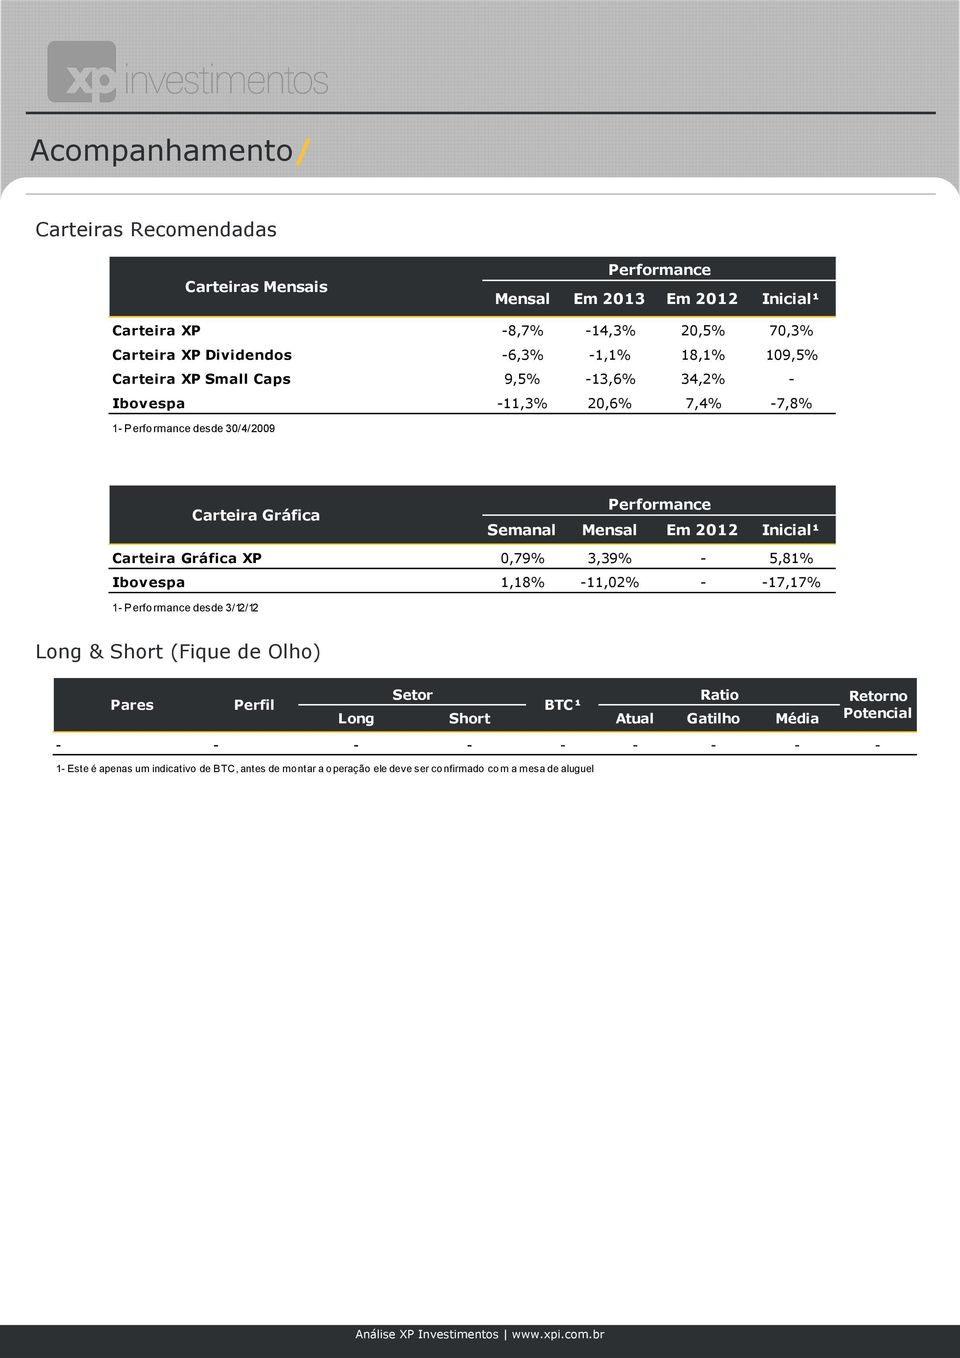 Inicial¹ Carteira Gráfica XP 0,79% 3,39% - 5,81% Ibovespa 1,18% -11,02% - -17,17% 1 - Performance desde 3/12/12 Long & Short (Fique de Olho) Pares Perfil Setor Ratio BTC¹